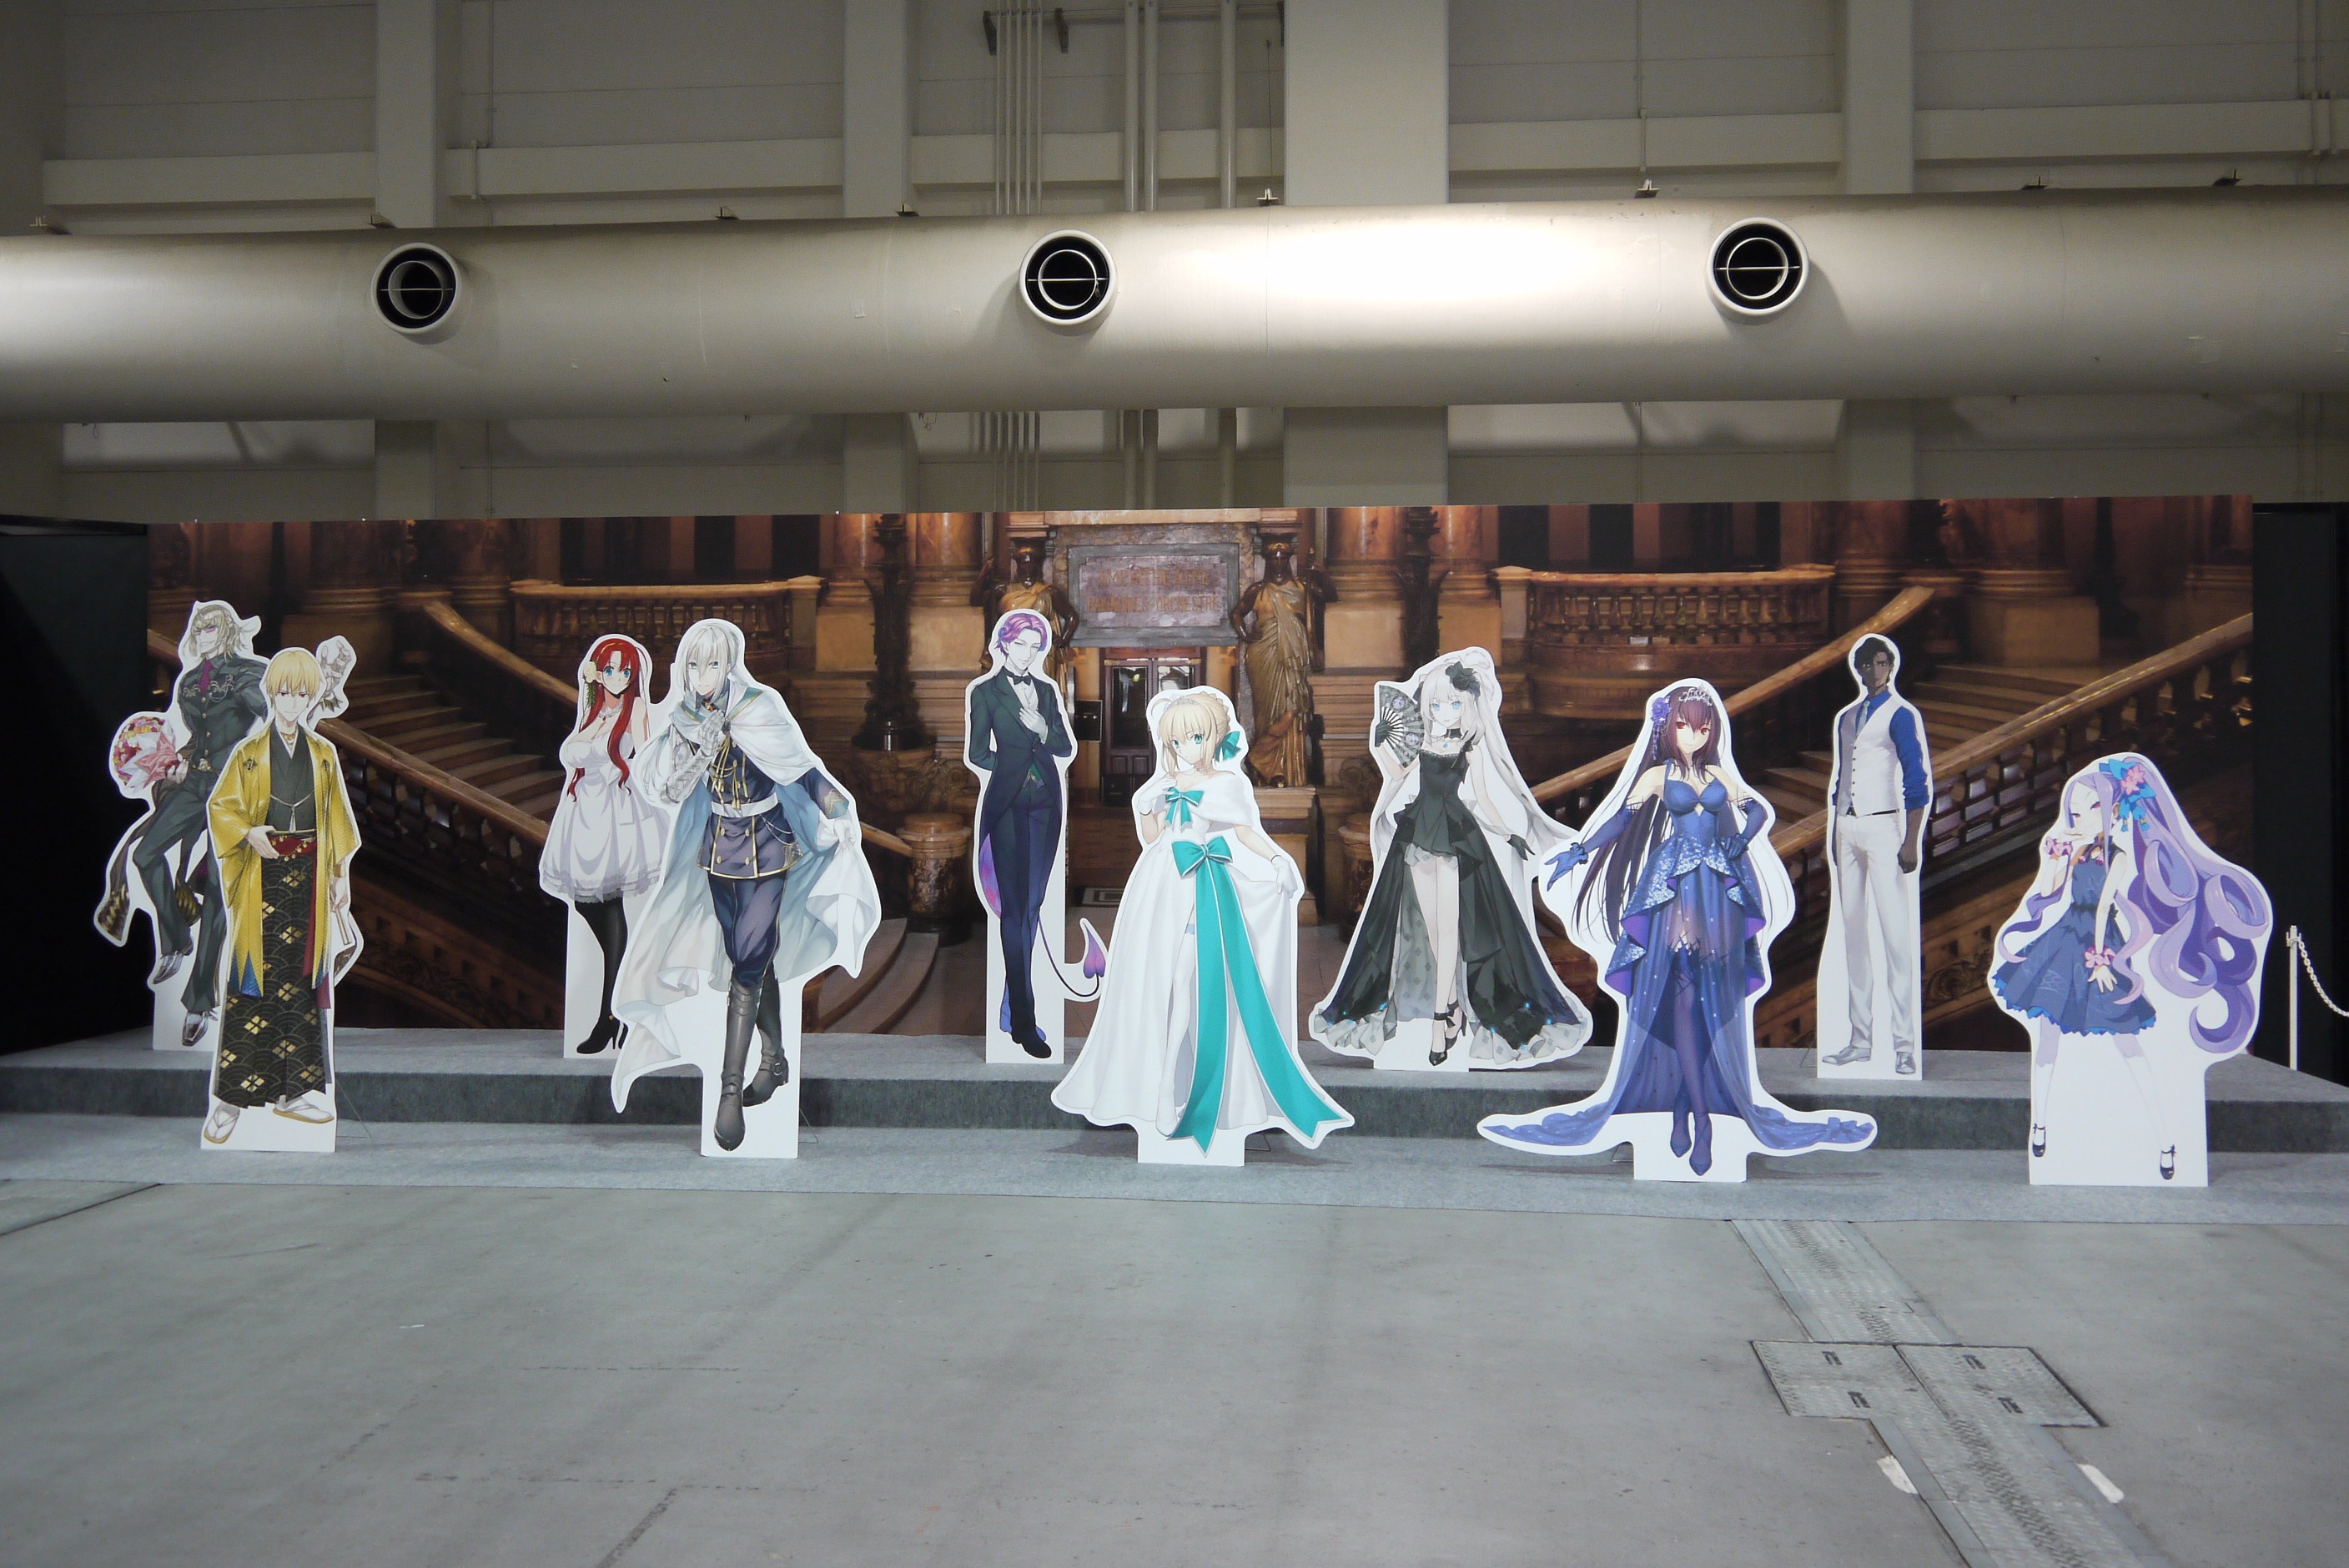 【FGO】冬祭り神戸会場の模様をレポート。ラムセウム・テンティリスの玉座が初展示